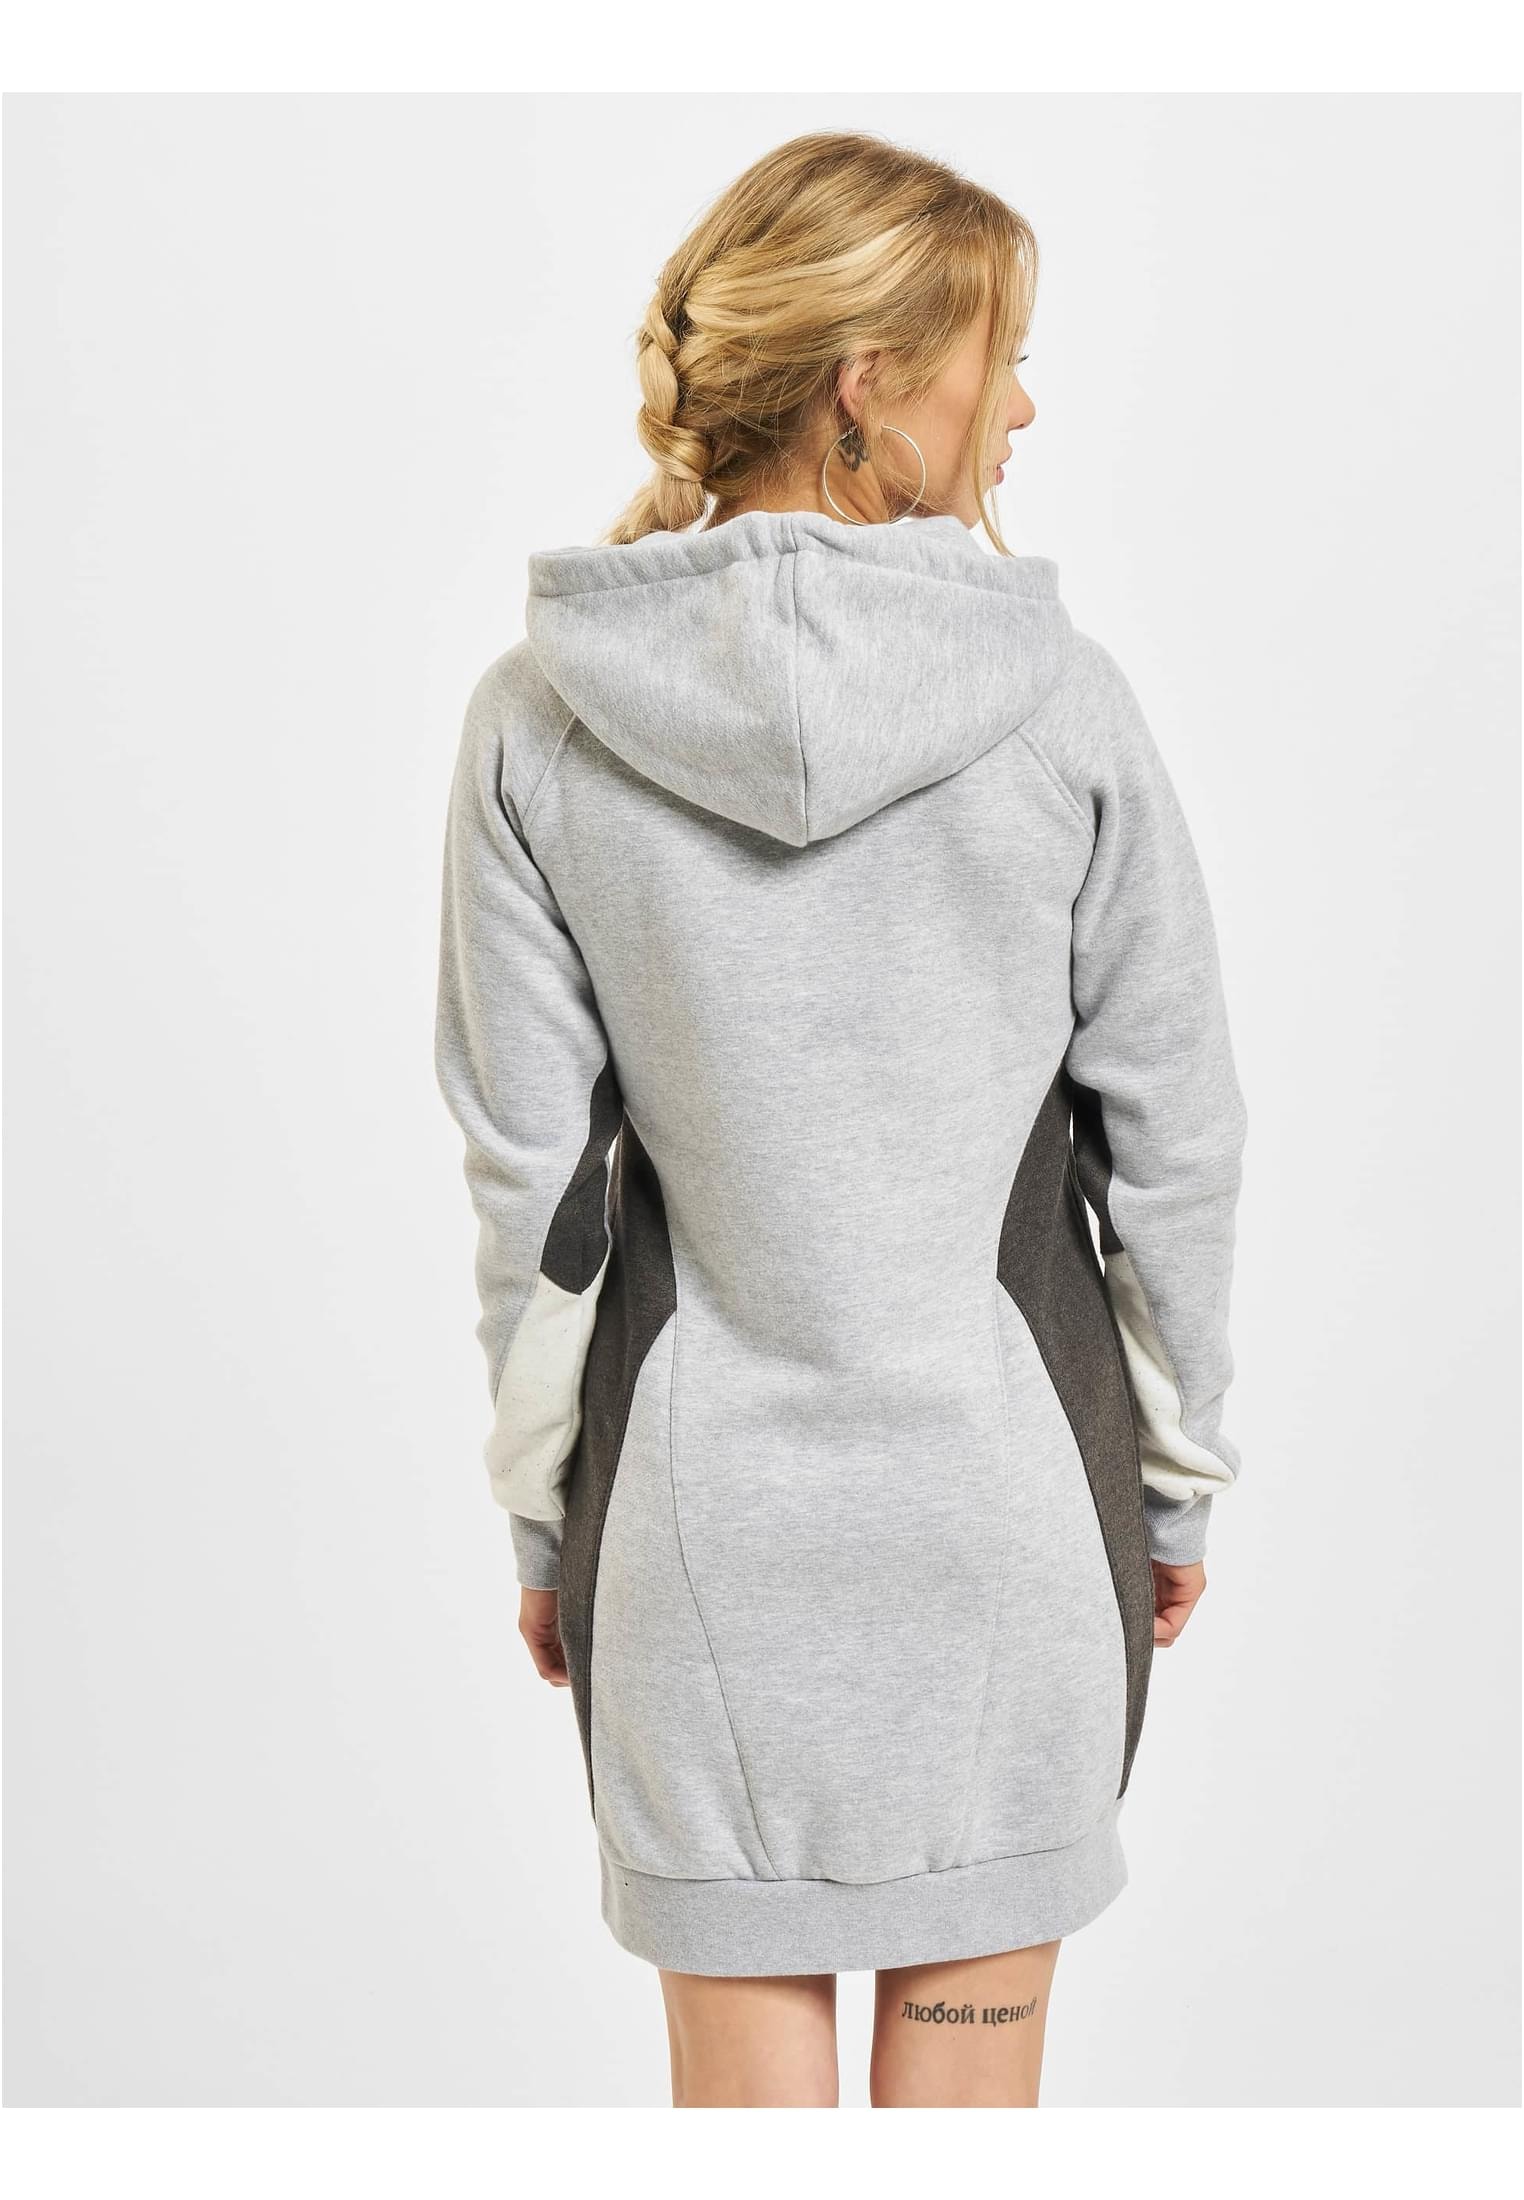 Just tlg.) Dress«, »Damen Jerseykleid online (1 Una | Rhyse BAUR kaufen